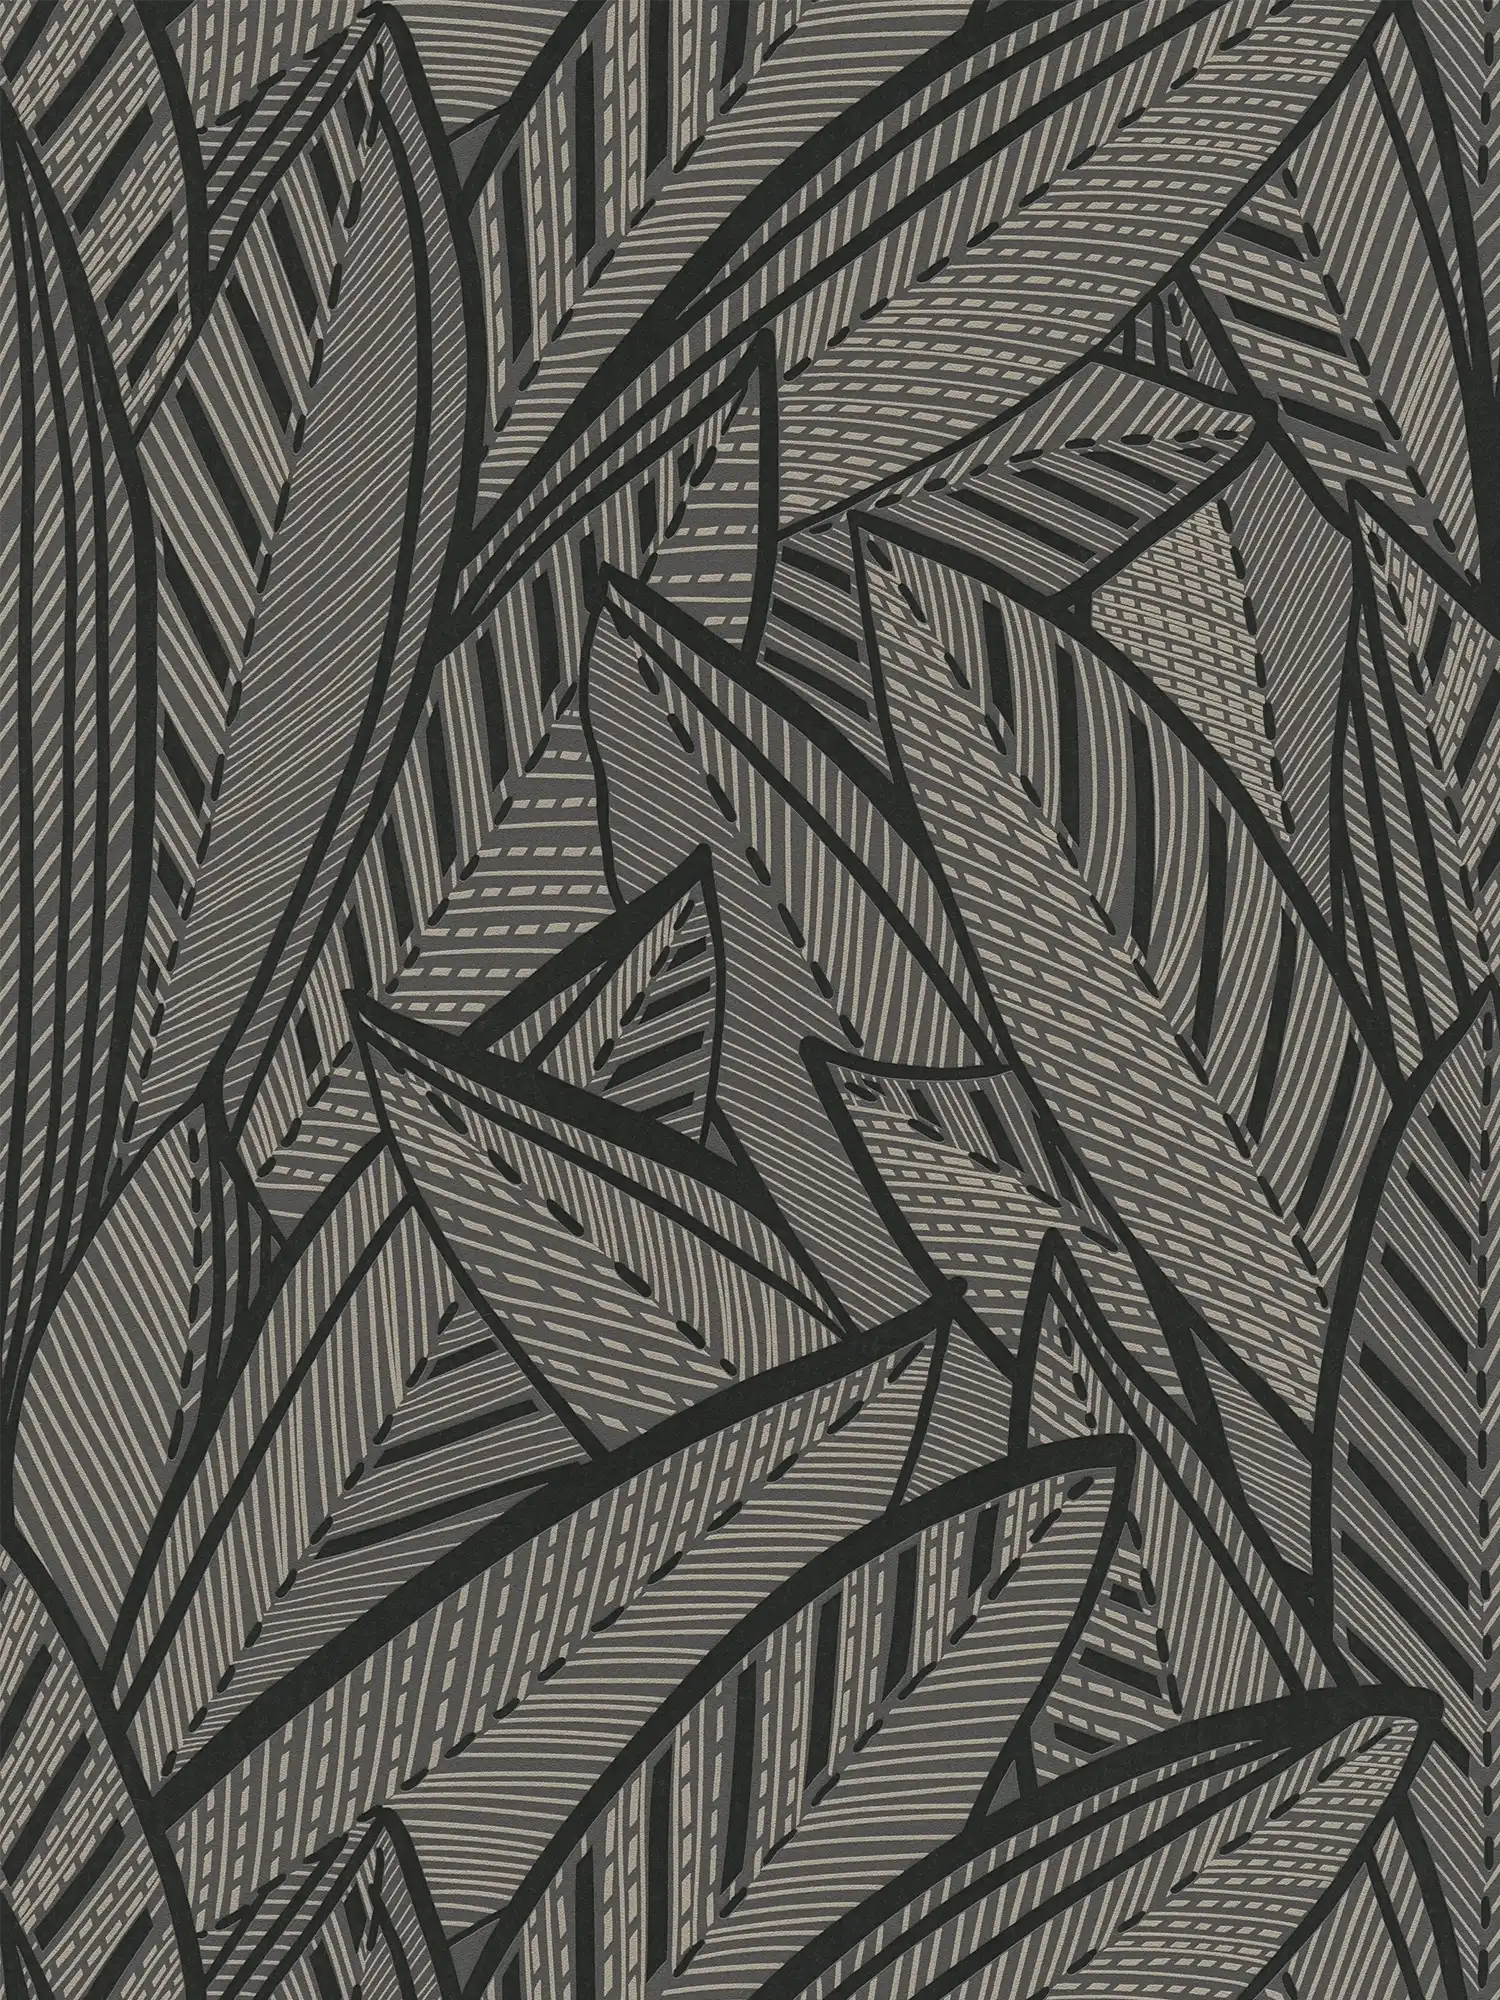 Jungle vliesbehang met bladmotief en glanseffecten - zwart, metallic
